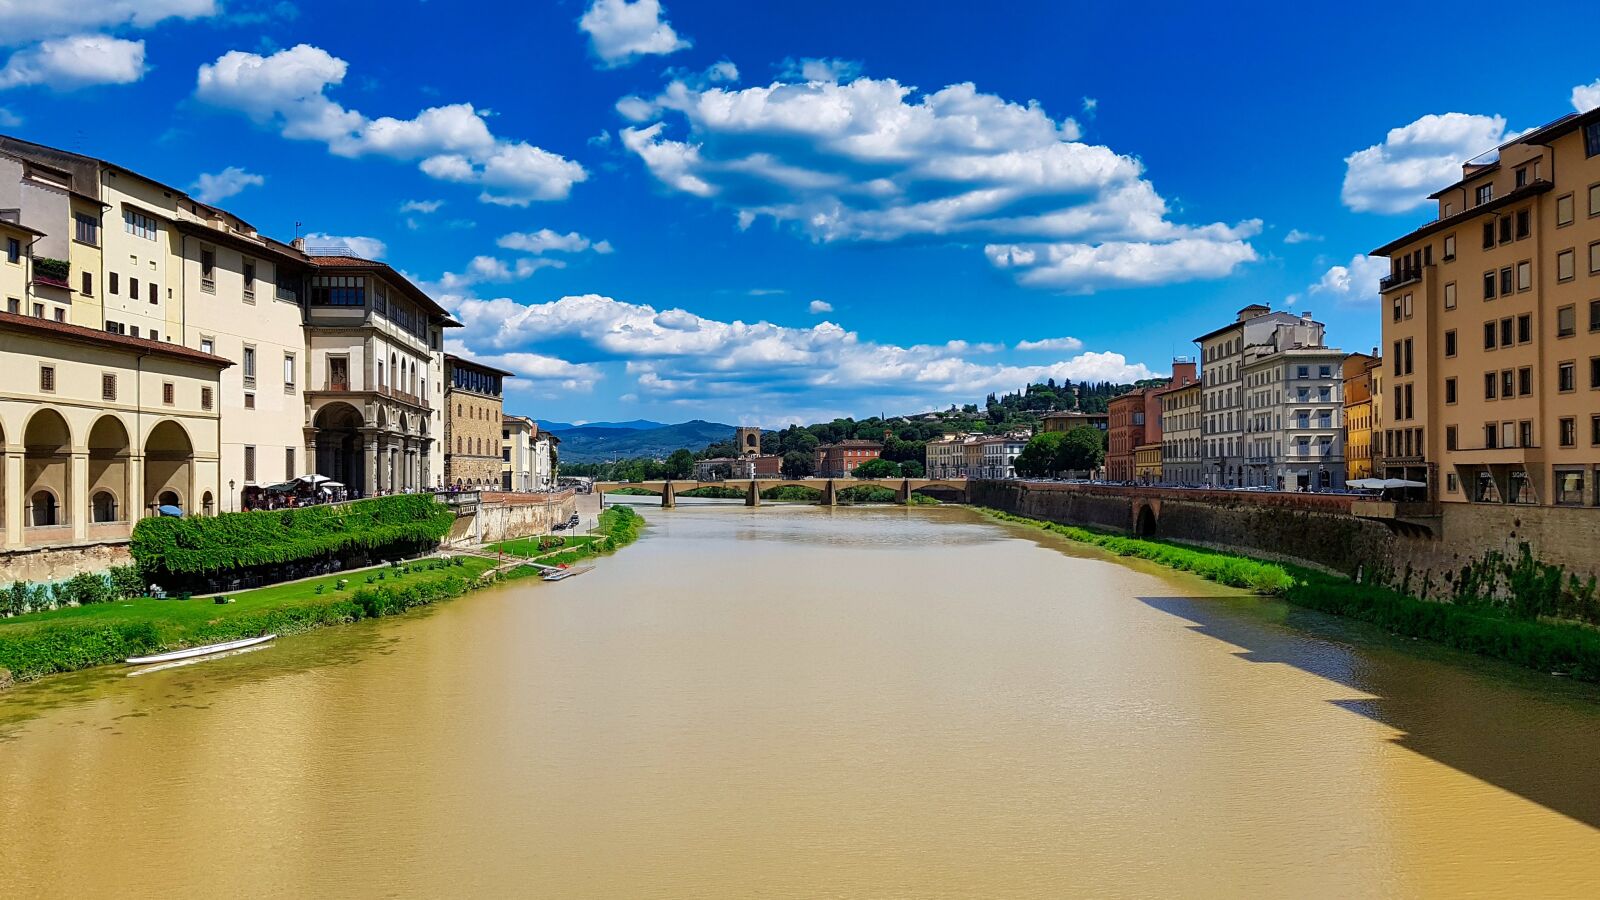 Samsung Galaxy S7 sample photo. Tuscany, italy, river photography